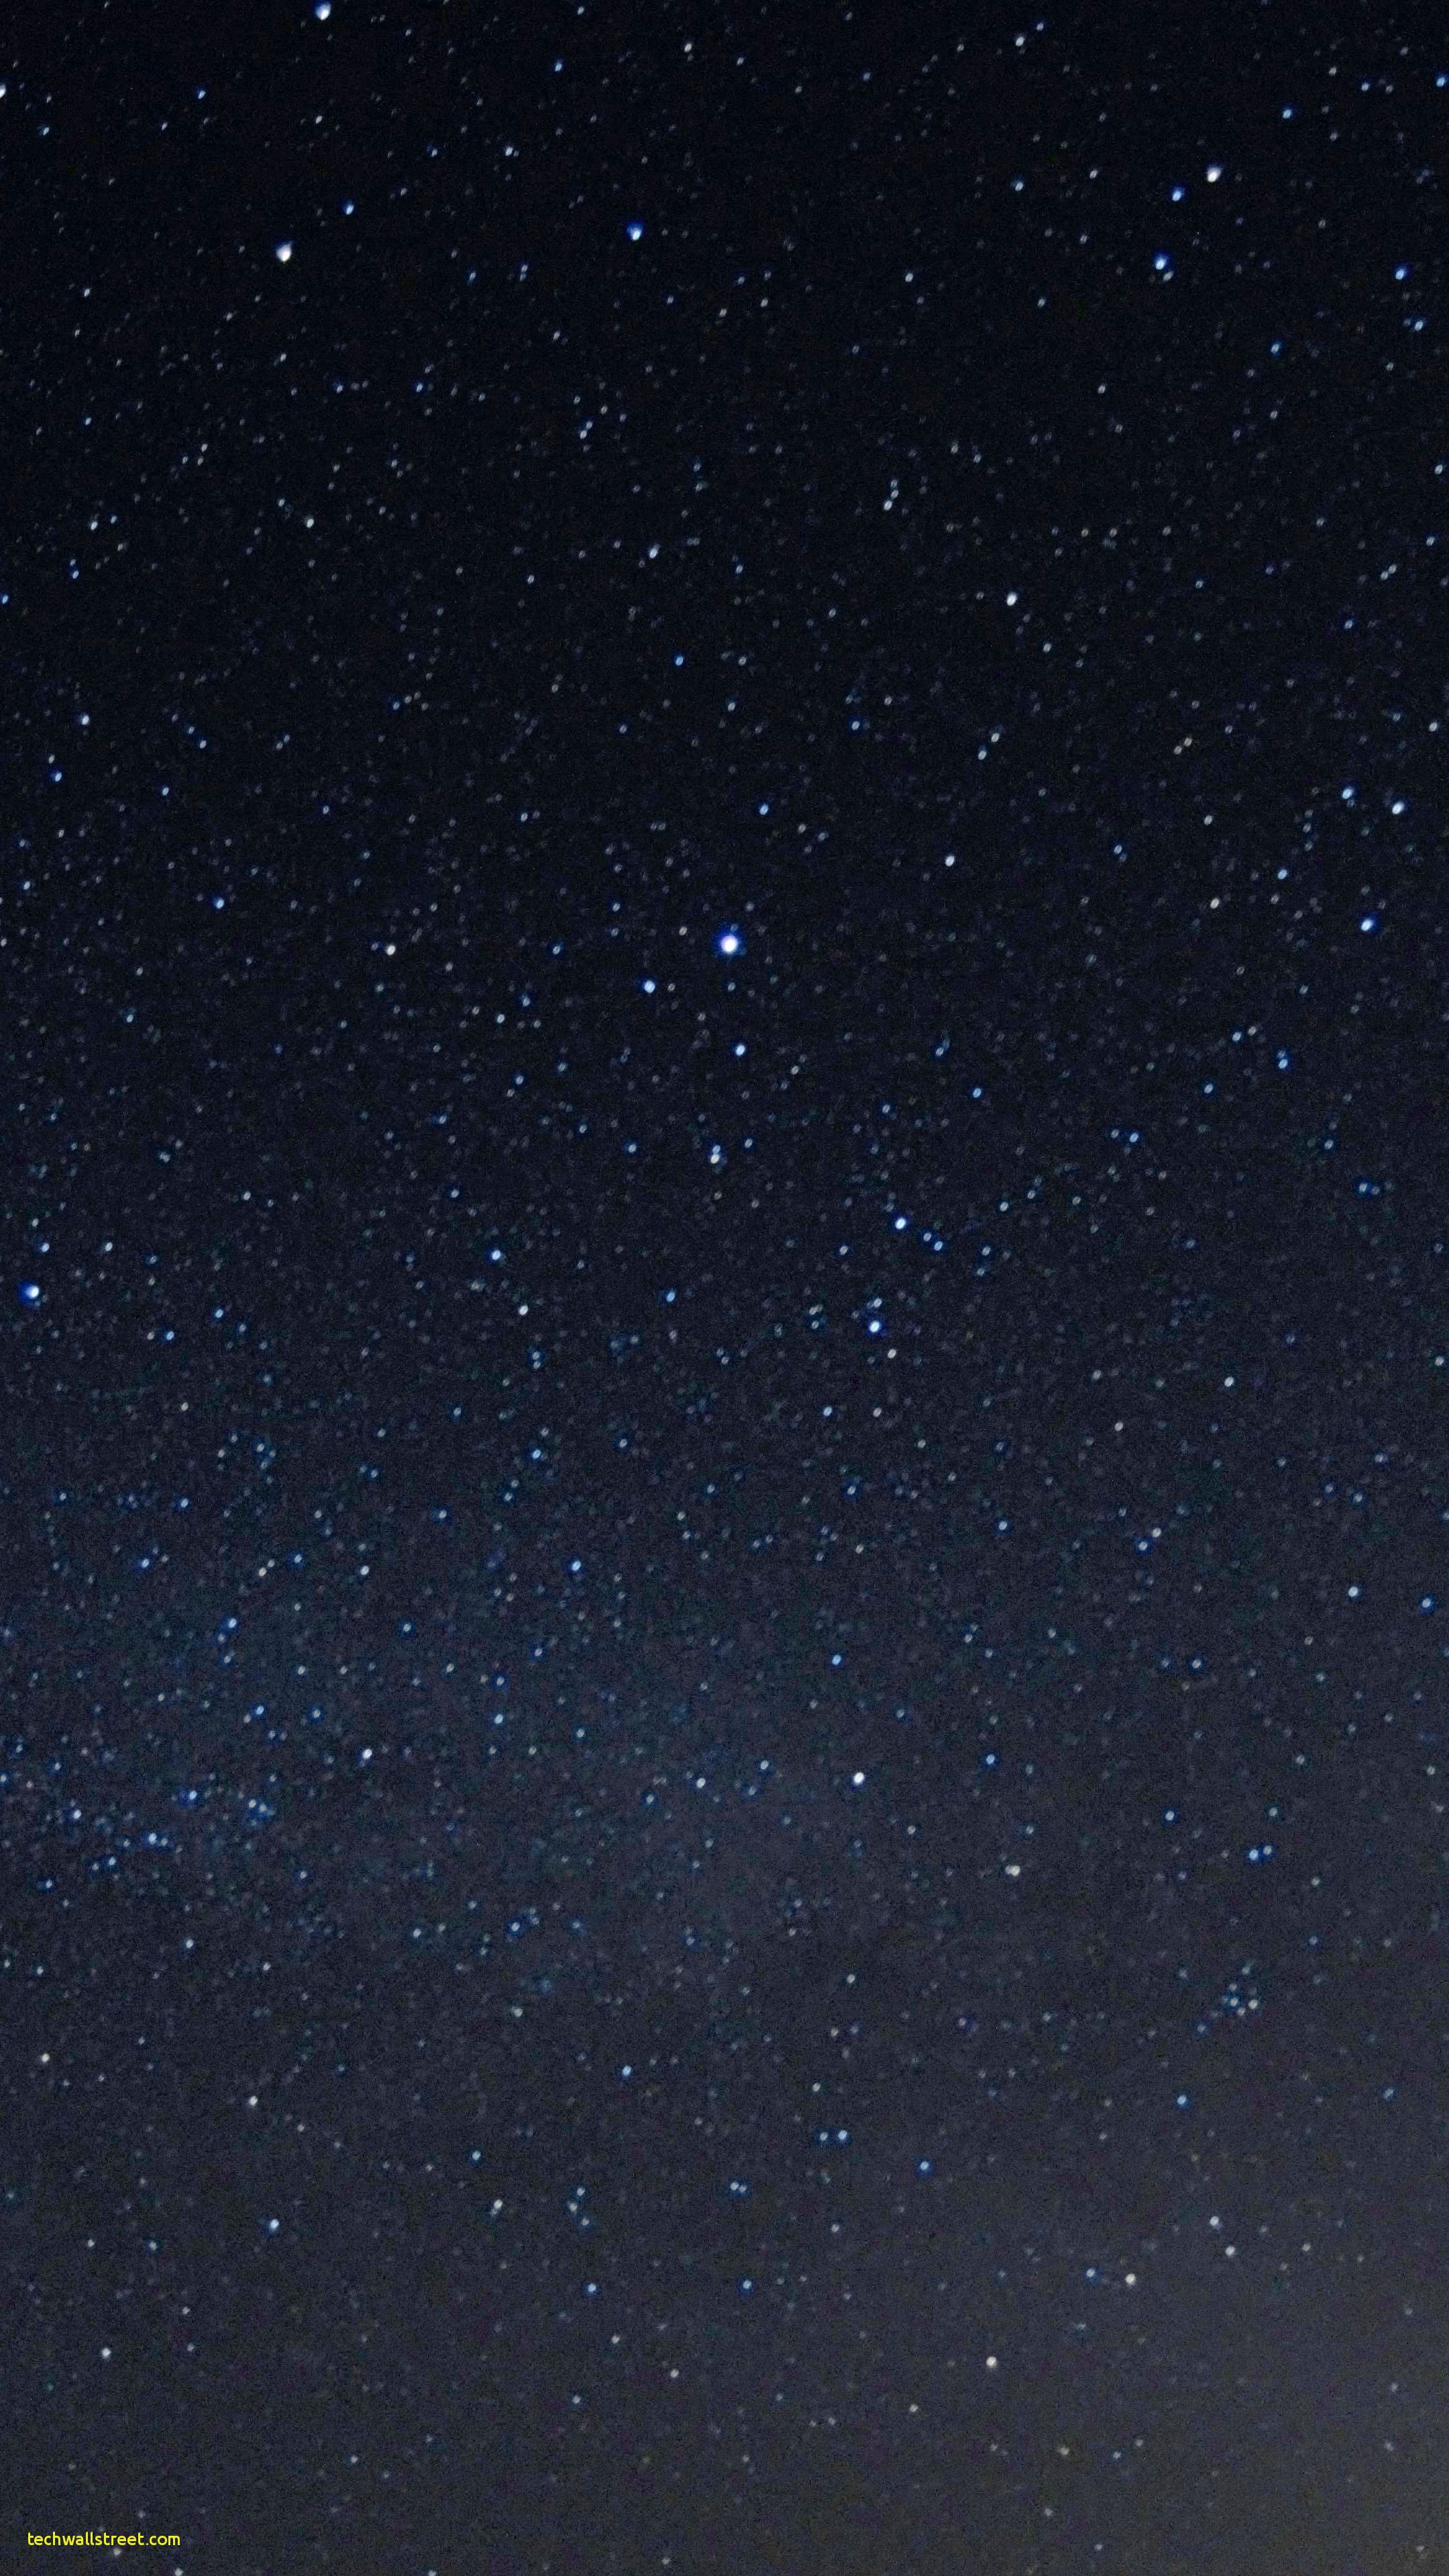 Cielo Starrysky Night Stars Wallpapers HD 4k fondo - Звездное